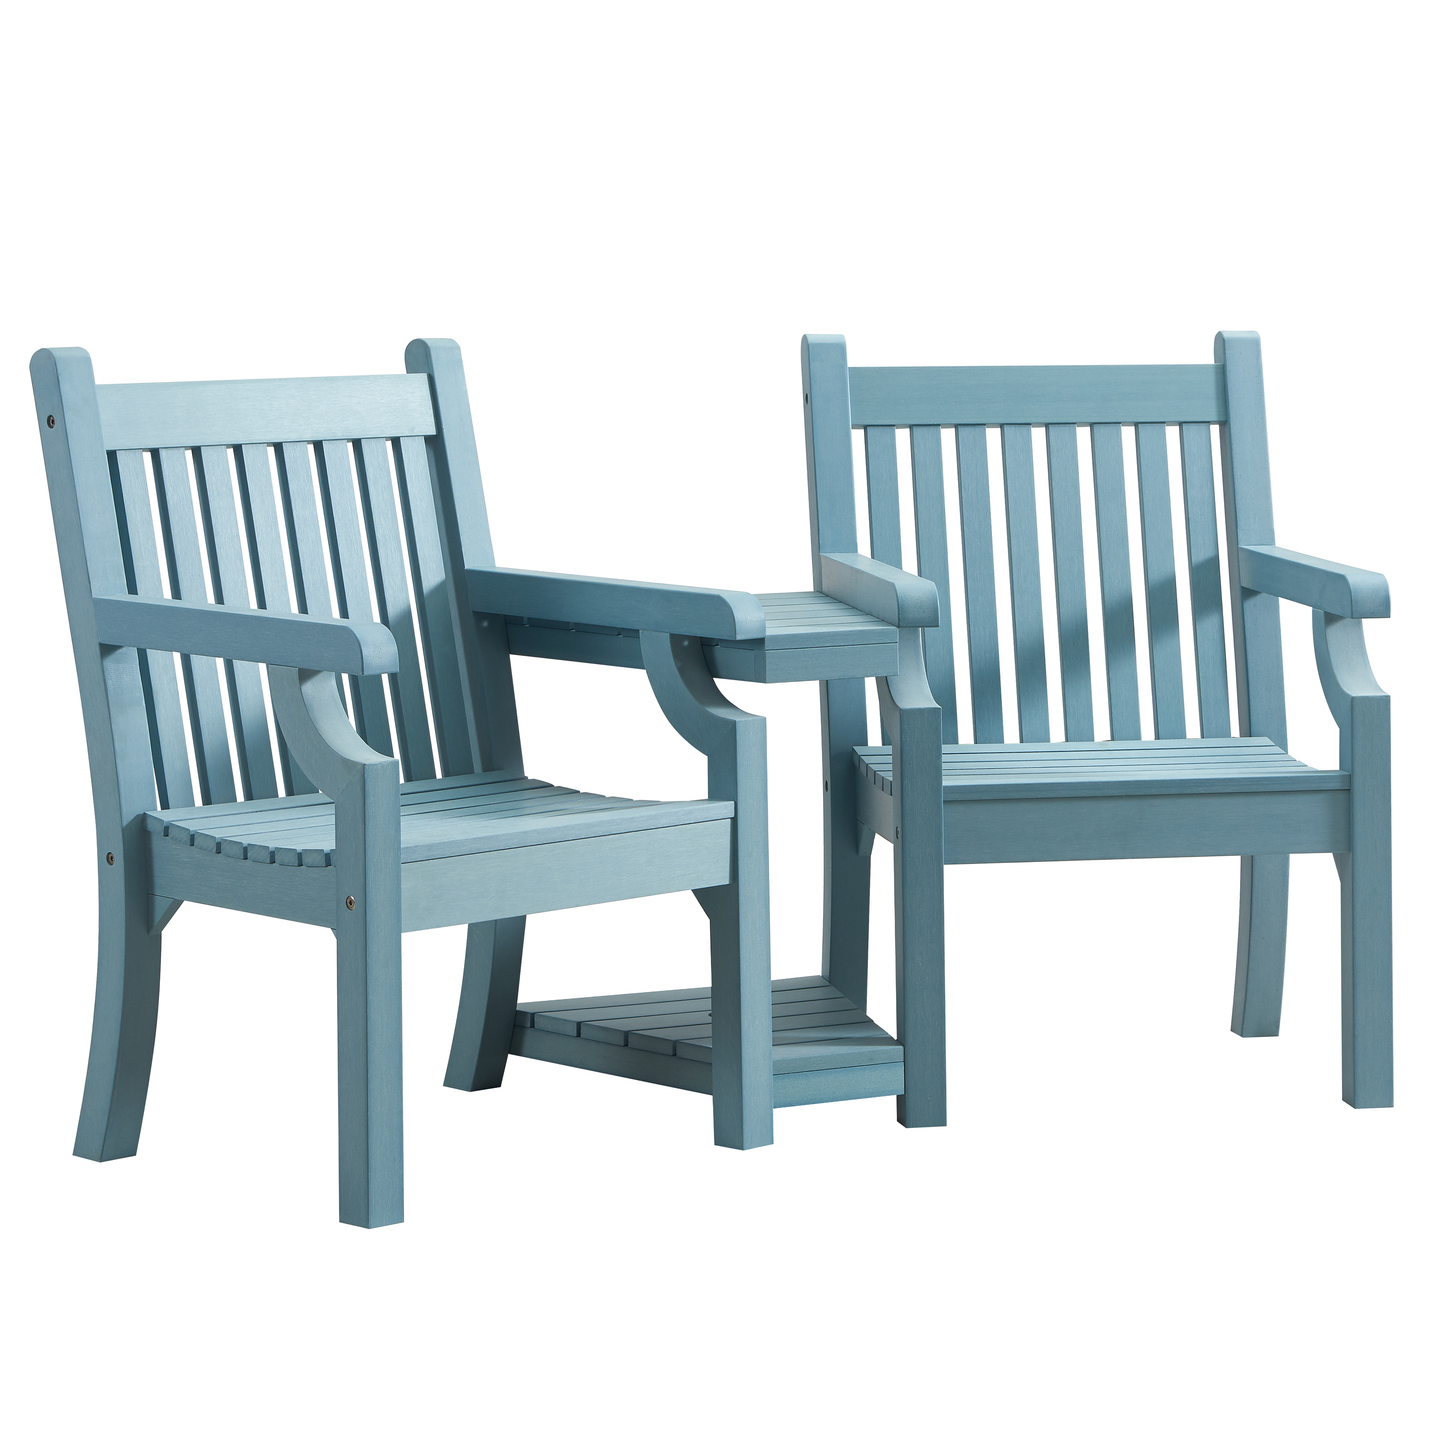 Winawood Sandwick Wood Effect Love Seat - Powder Blue